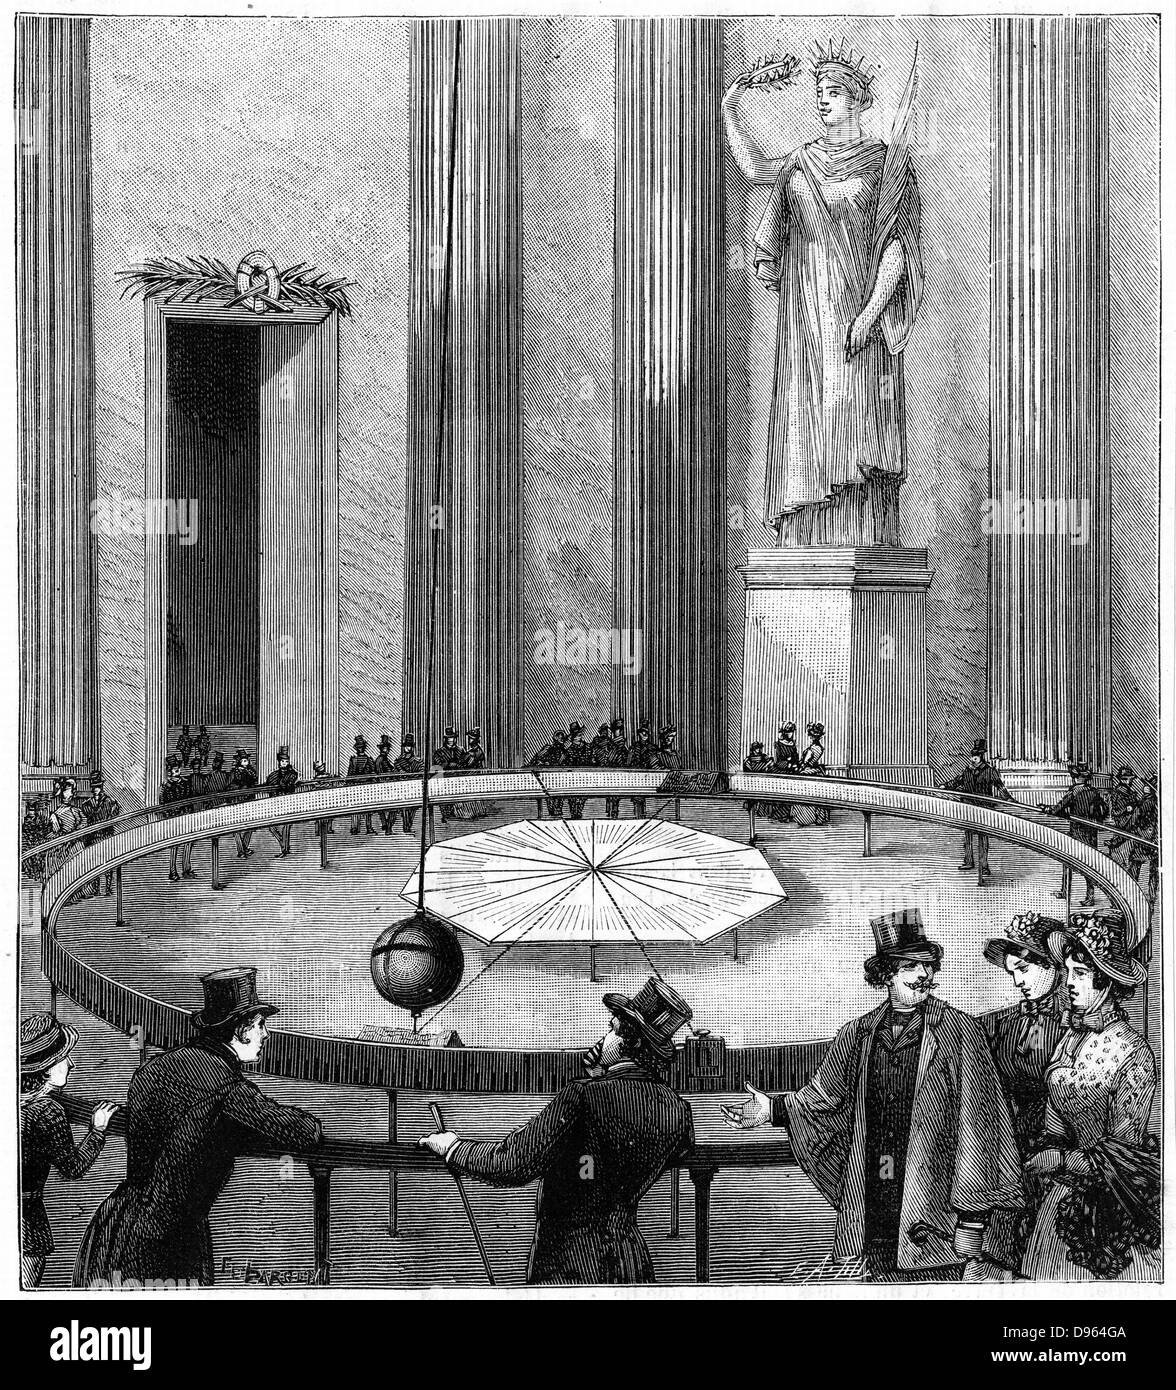 Demostración de la rotación de la tierra usando (Jean Bernard) León Foucault (1819-1868) Demostración de la rotación de la tierra utilizando péndulo suspendido libremente en el Panteón, París, 1851. A partir de "La naturaleza" (París 1887). Grabado. Foto de stock